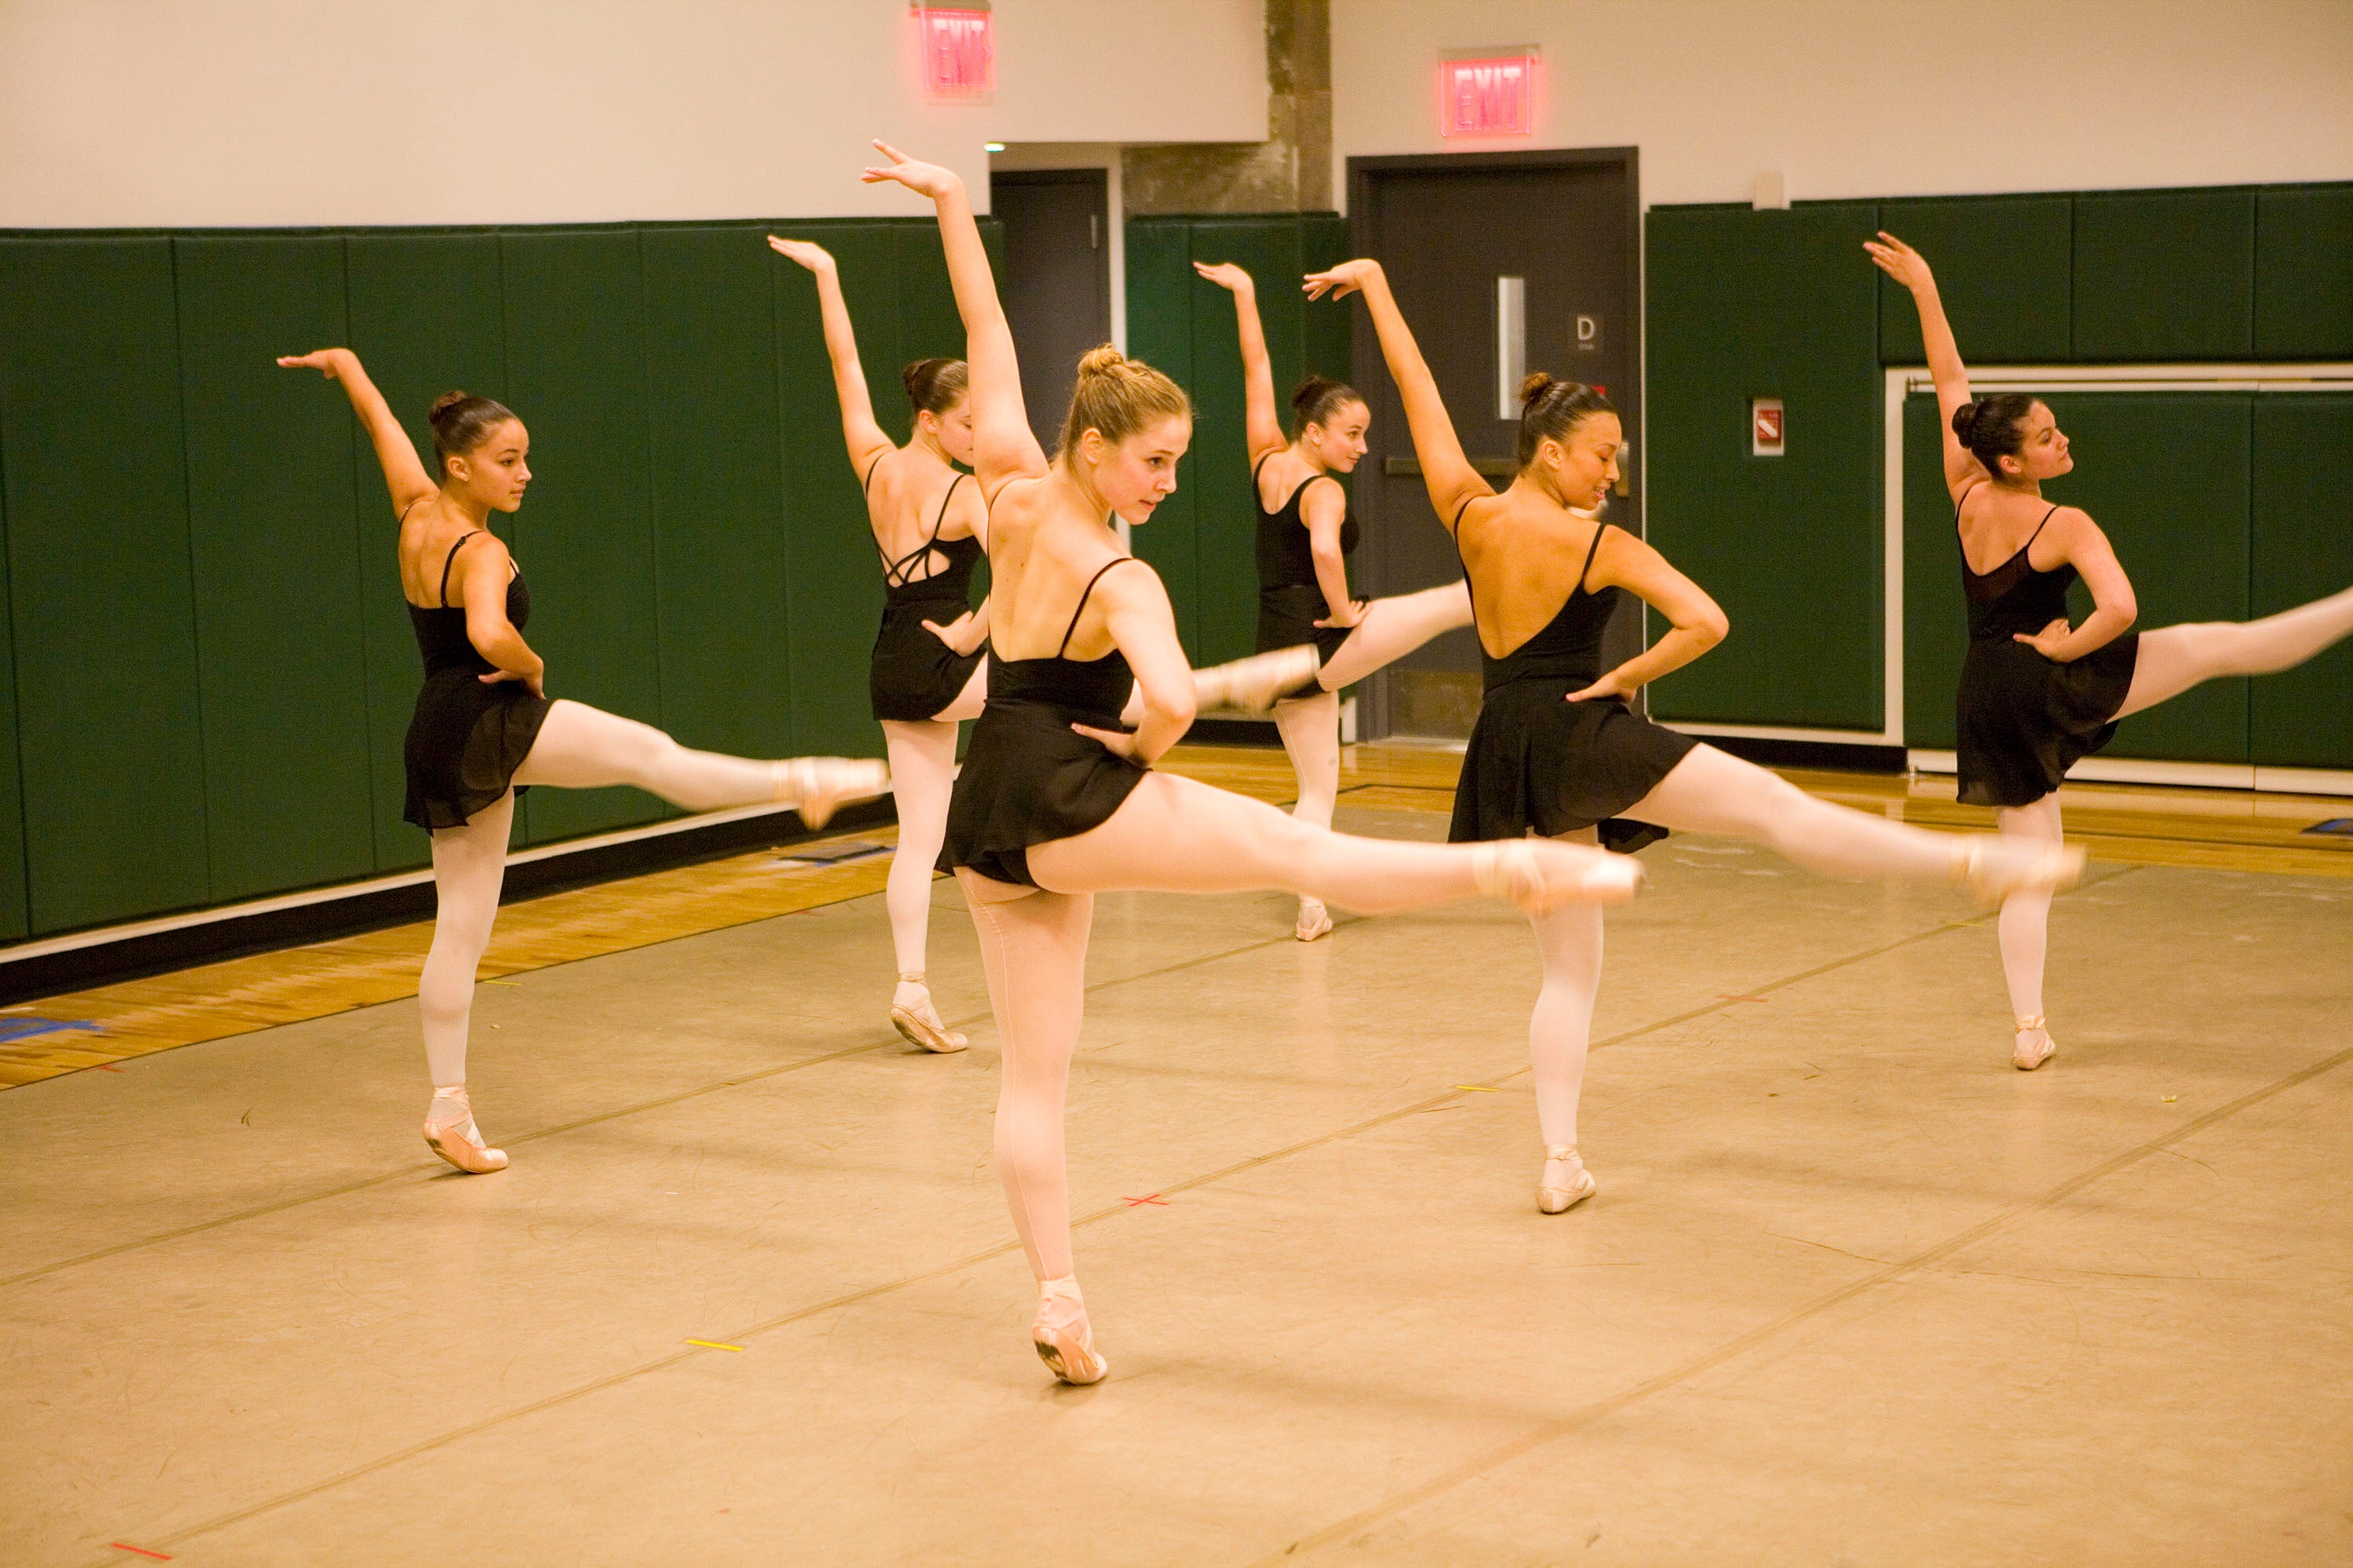 Ballet dancers during practice.